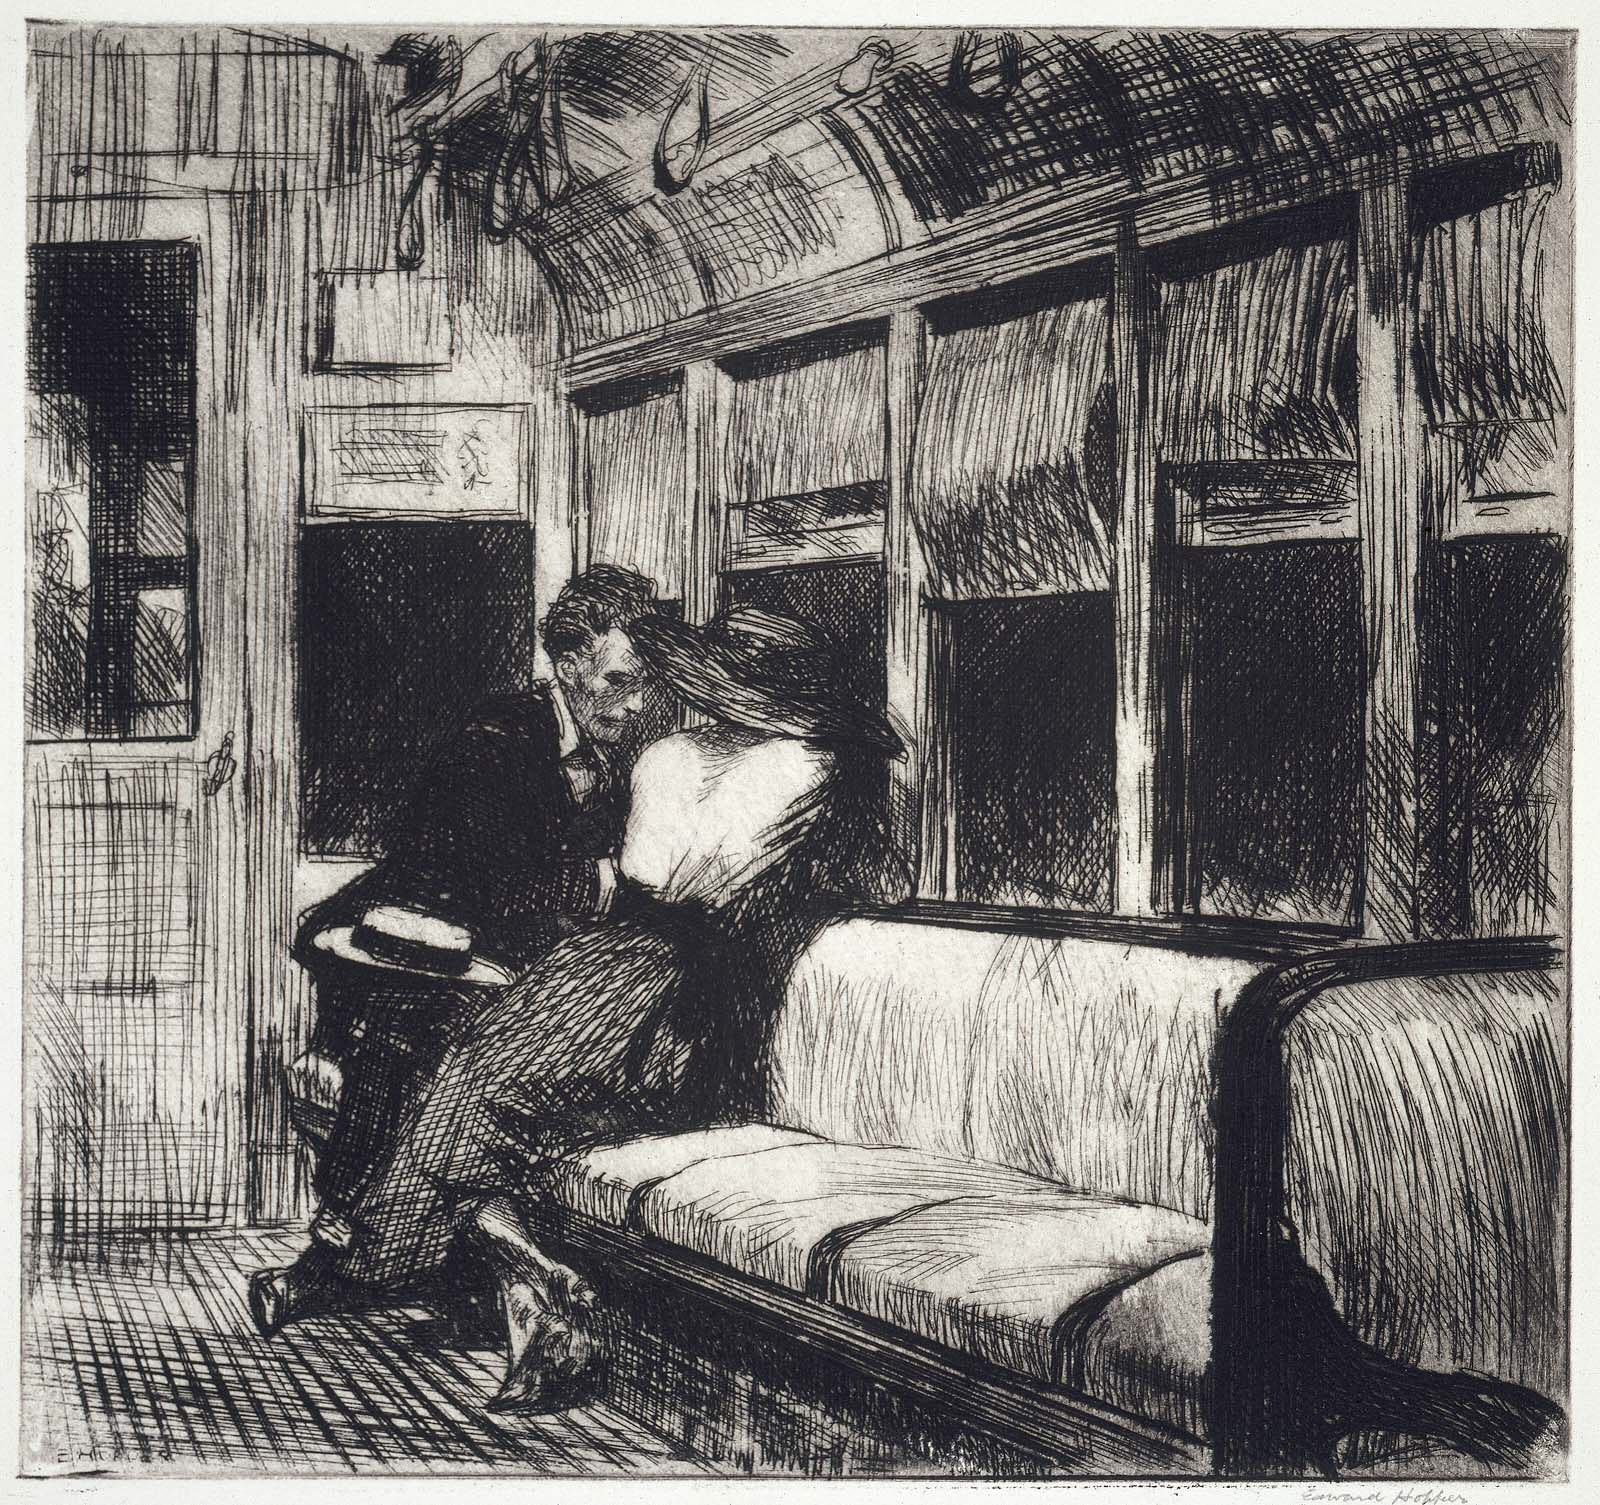 Lトレインの夜 by Edward Hopper - 1918 - 18.7 x 19.9 cm 